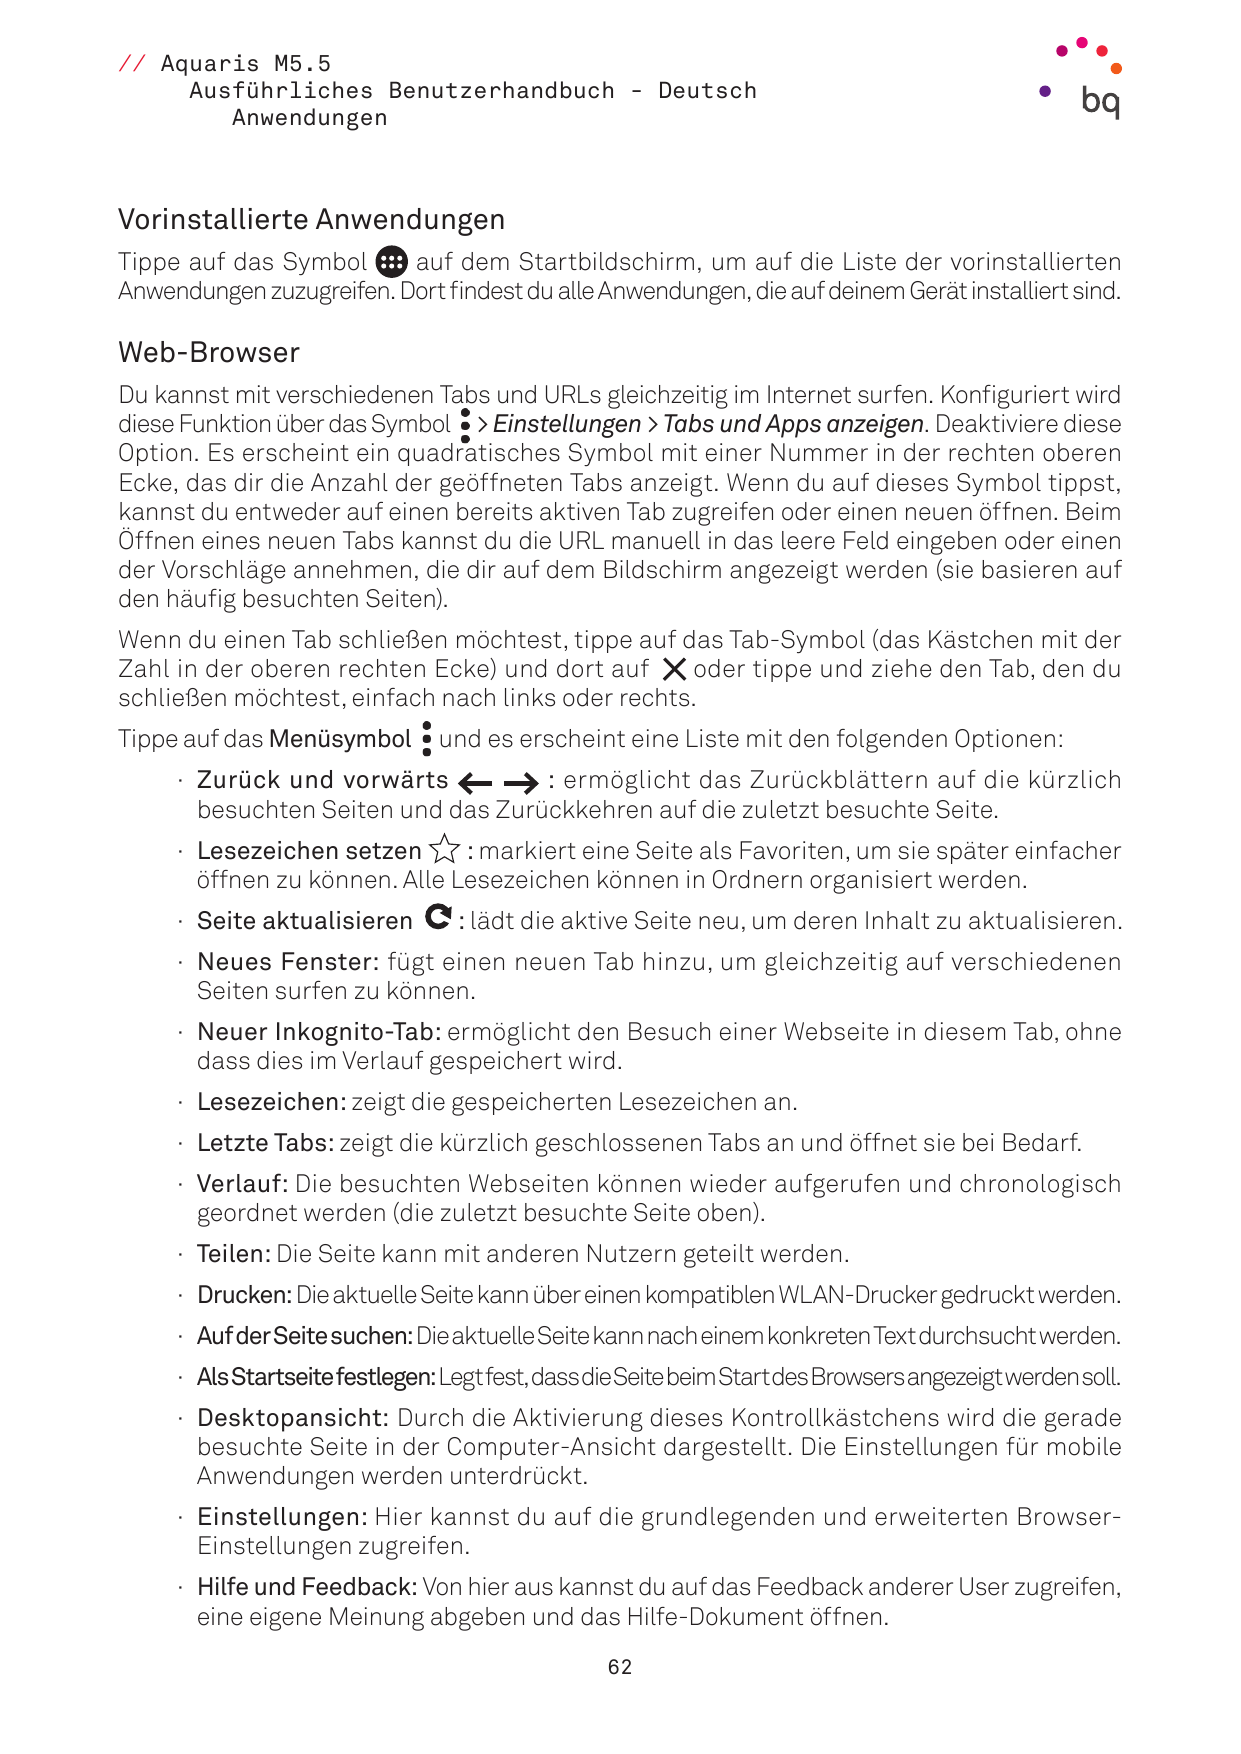 // Aquaris M5.5Ausführliches Benutzerhandbuch - DeutschAnwendungenVorinstallierte AnwendungenTippe auf das Symbolauf dem Startbi